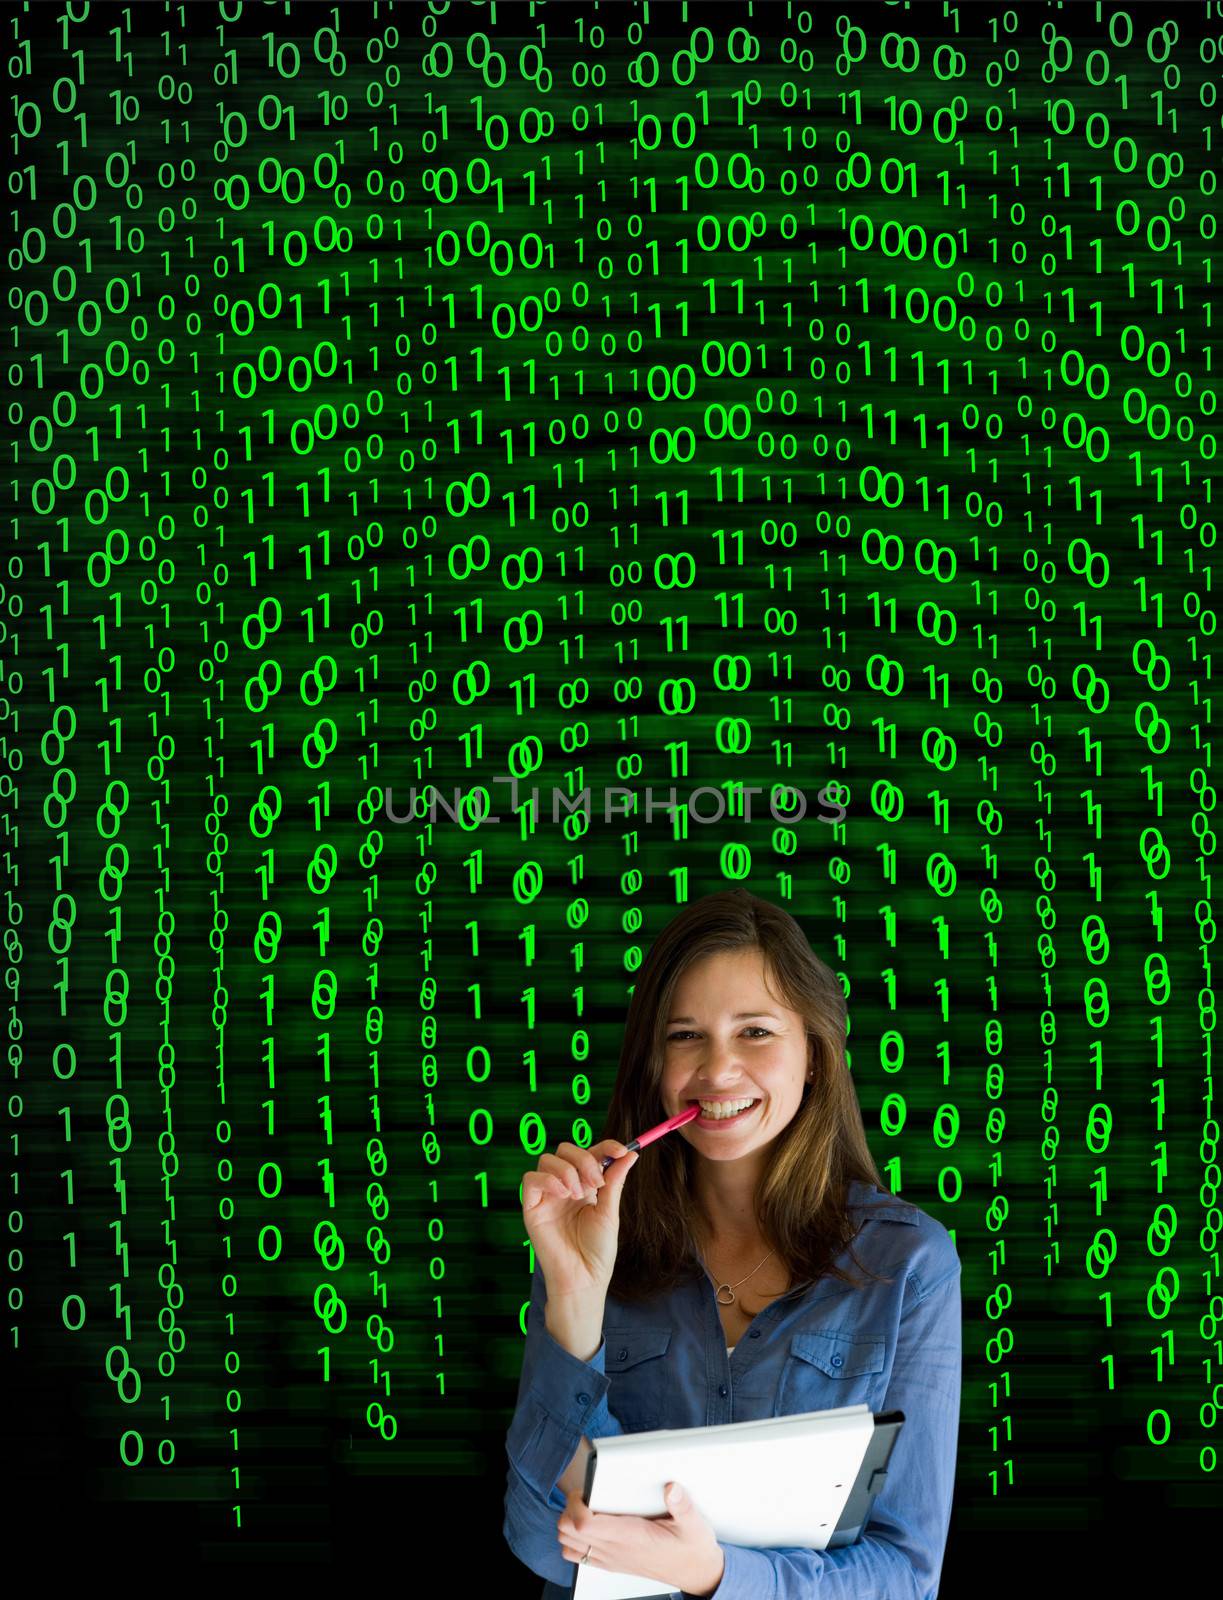 Nerd computer businesswoman on matrix binary background